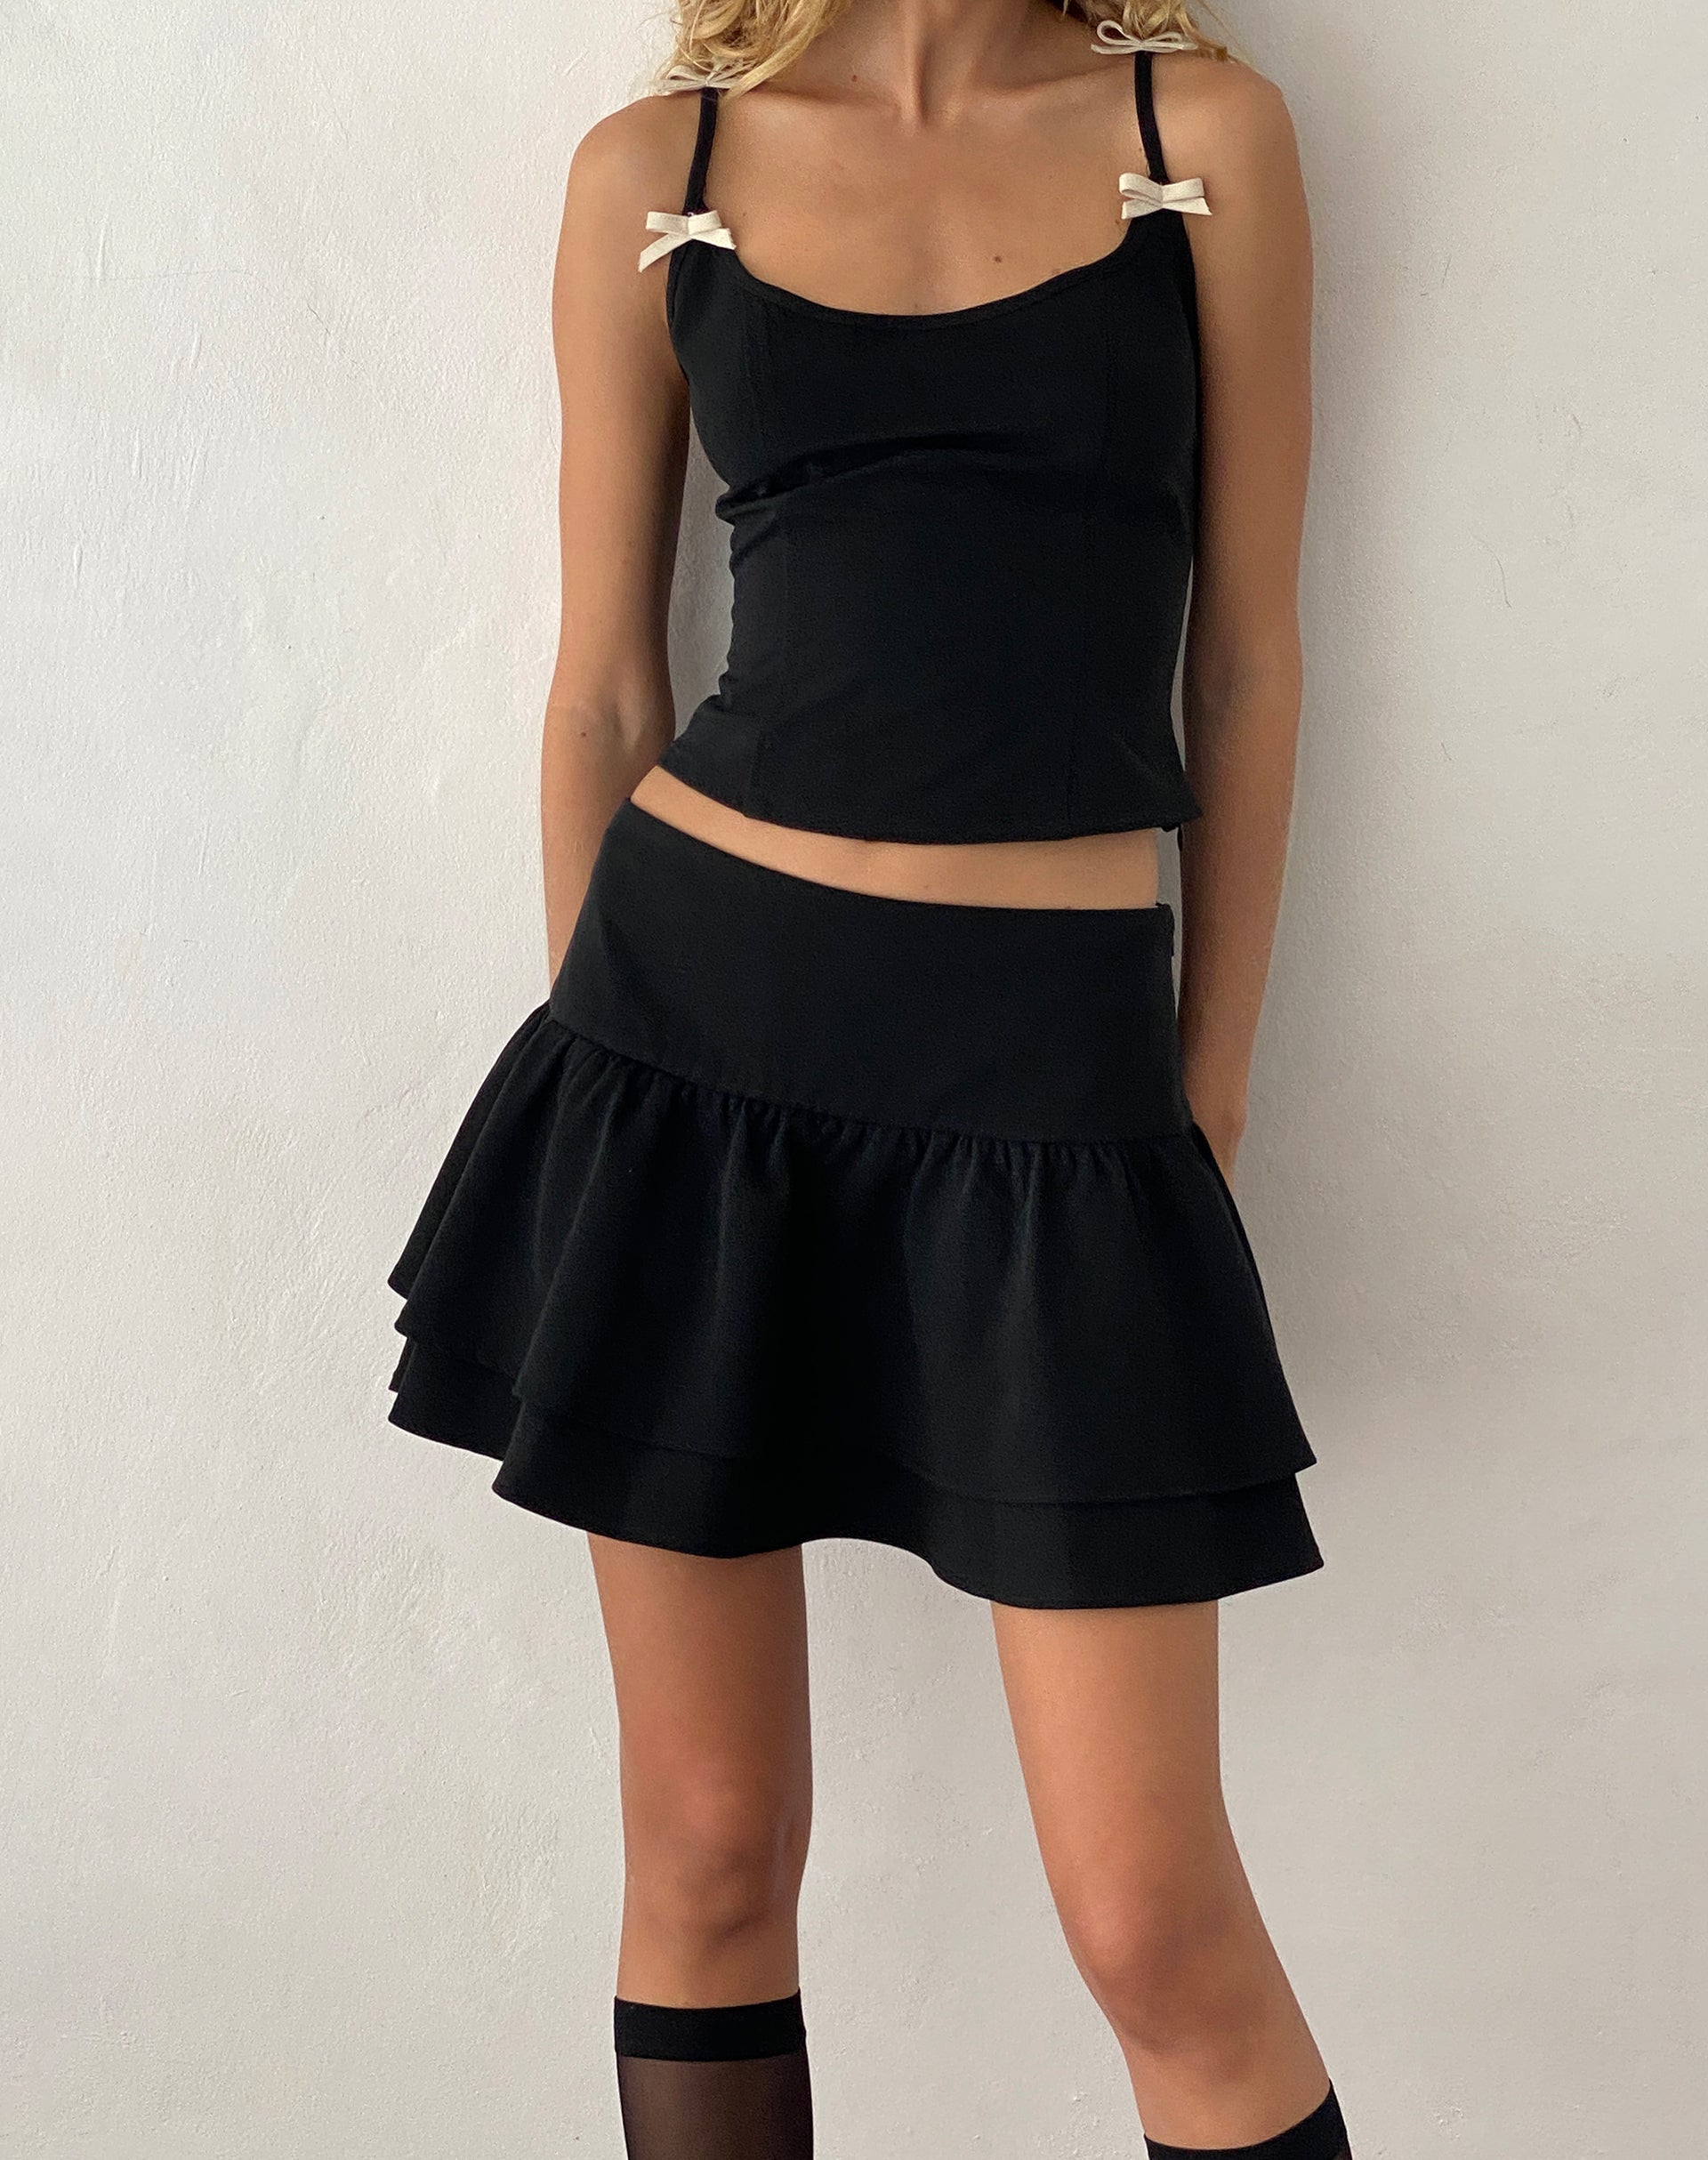 Image de la mini-jupe plissée et ajustée Samrina en noir